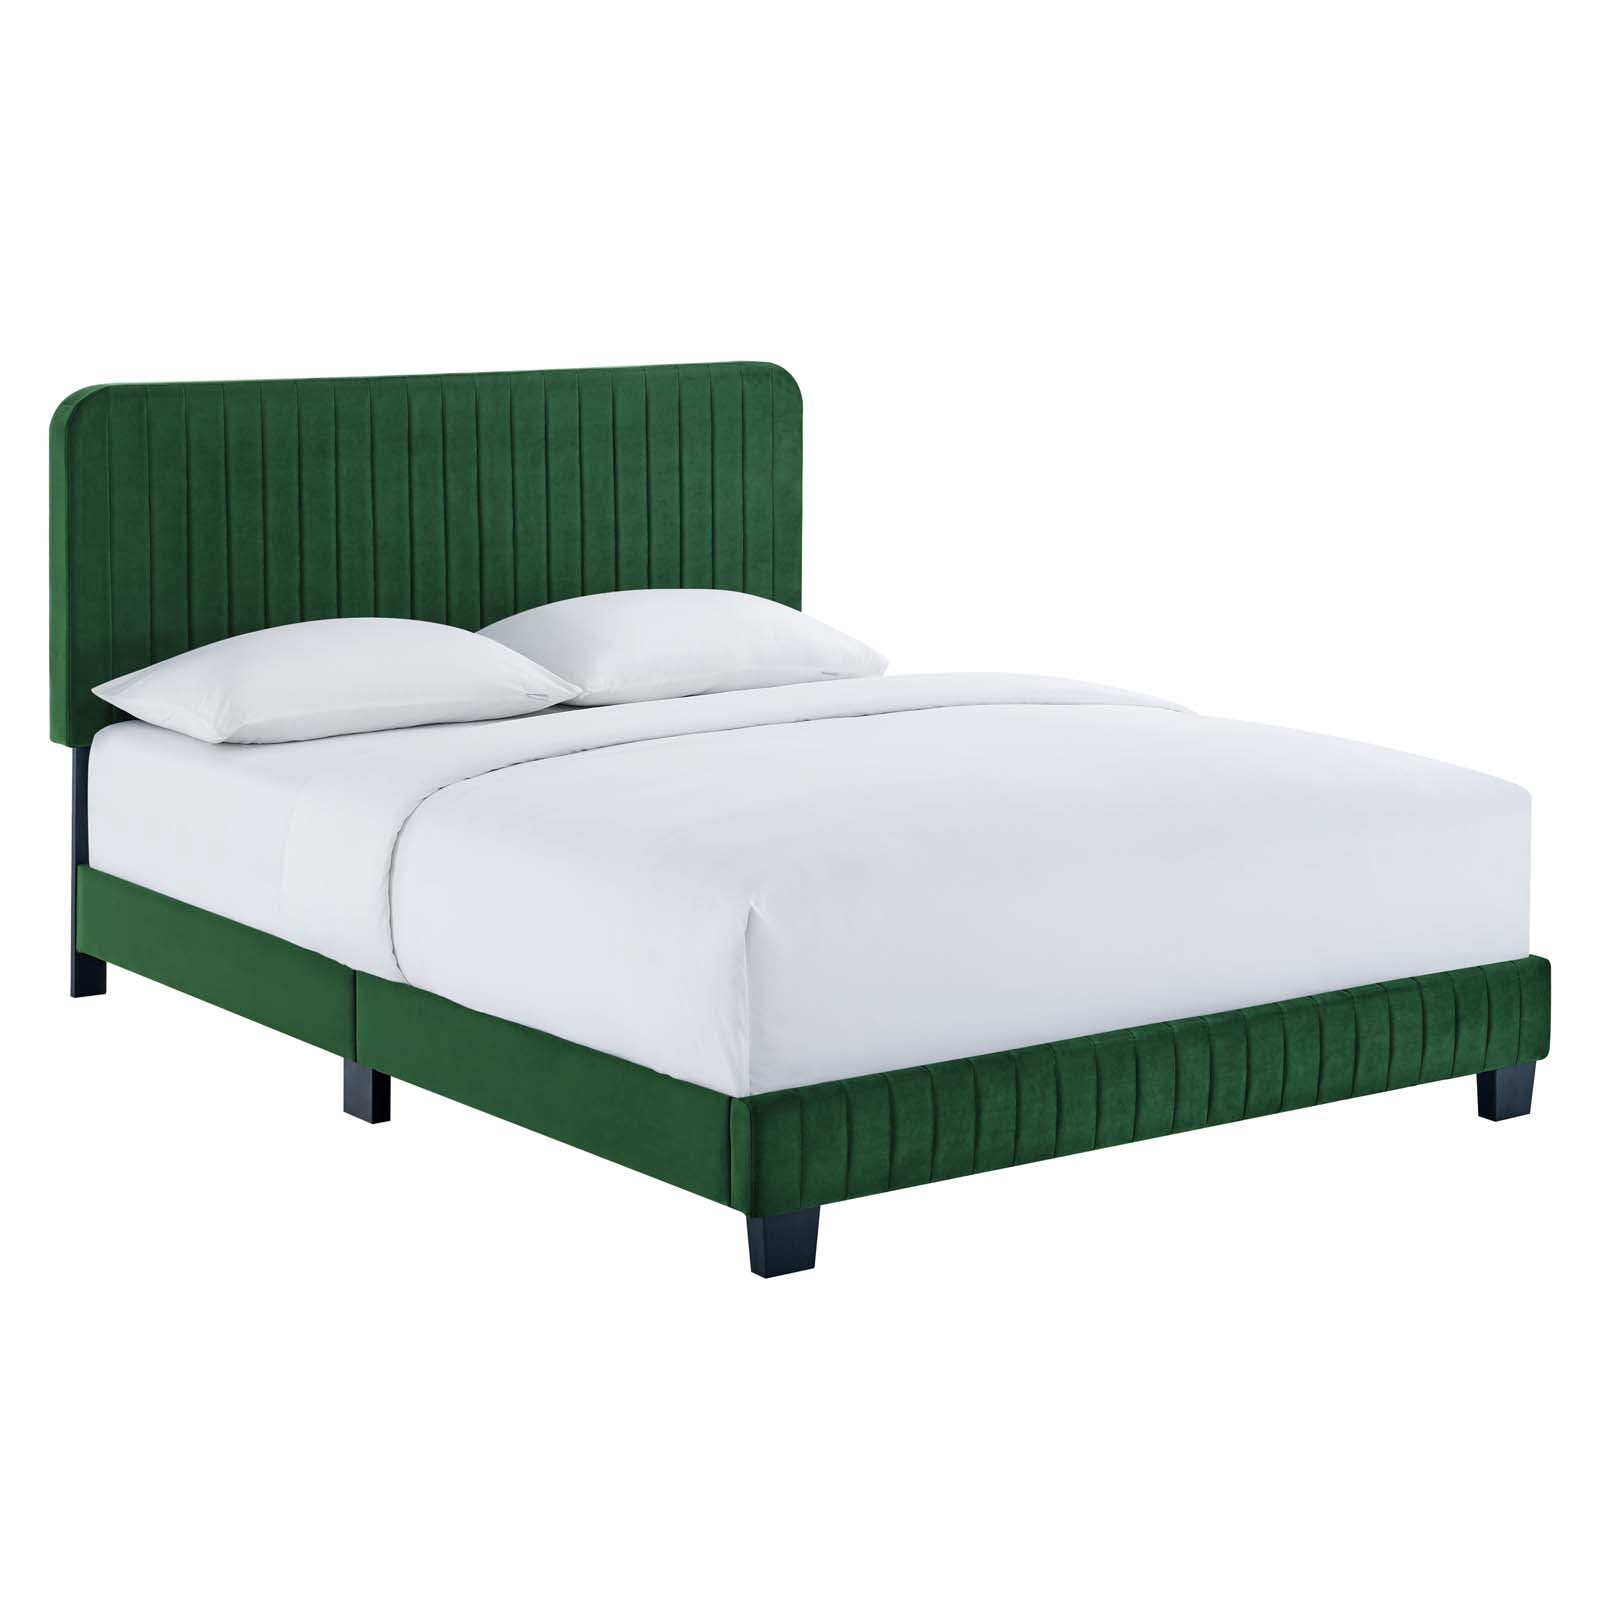 Modway Beds - Celine Channel Tufted Performance Velvet Full Platform Bed Emerald